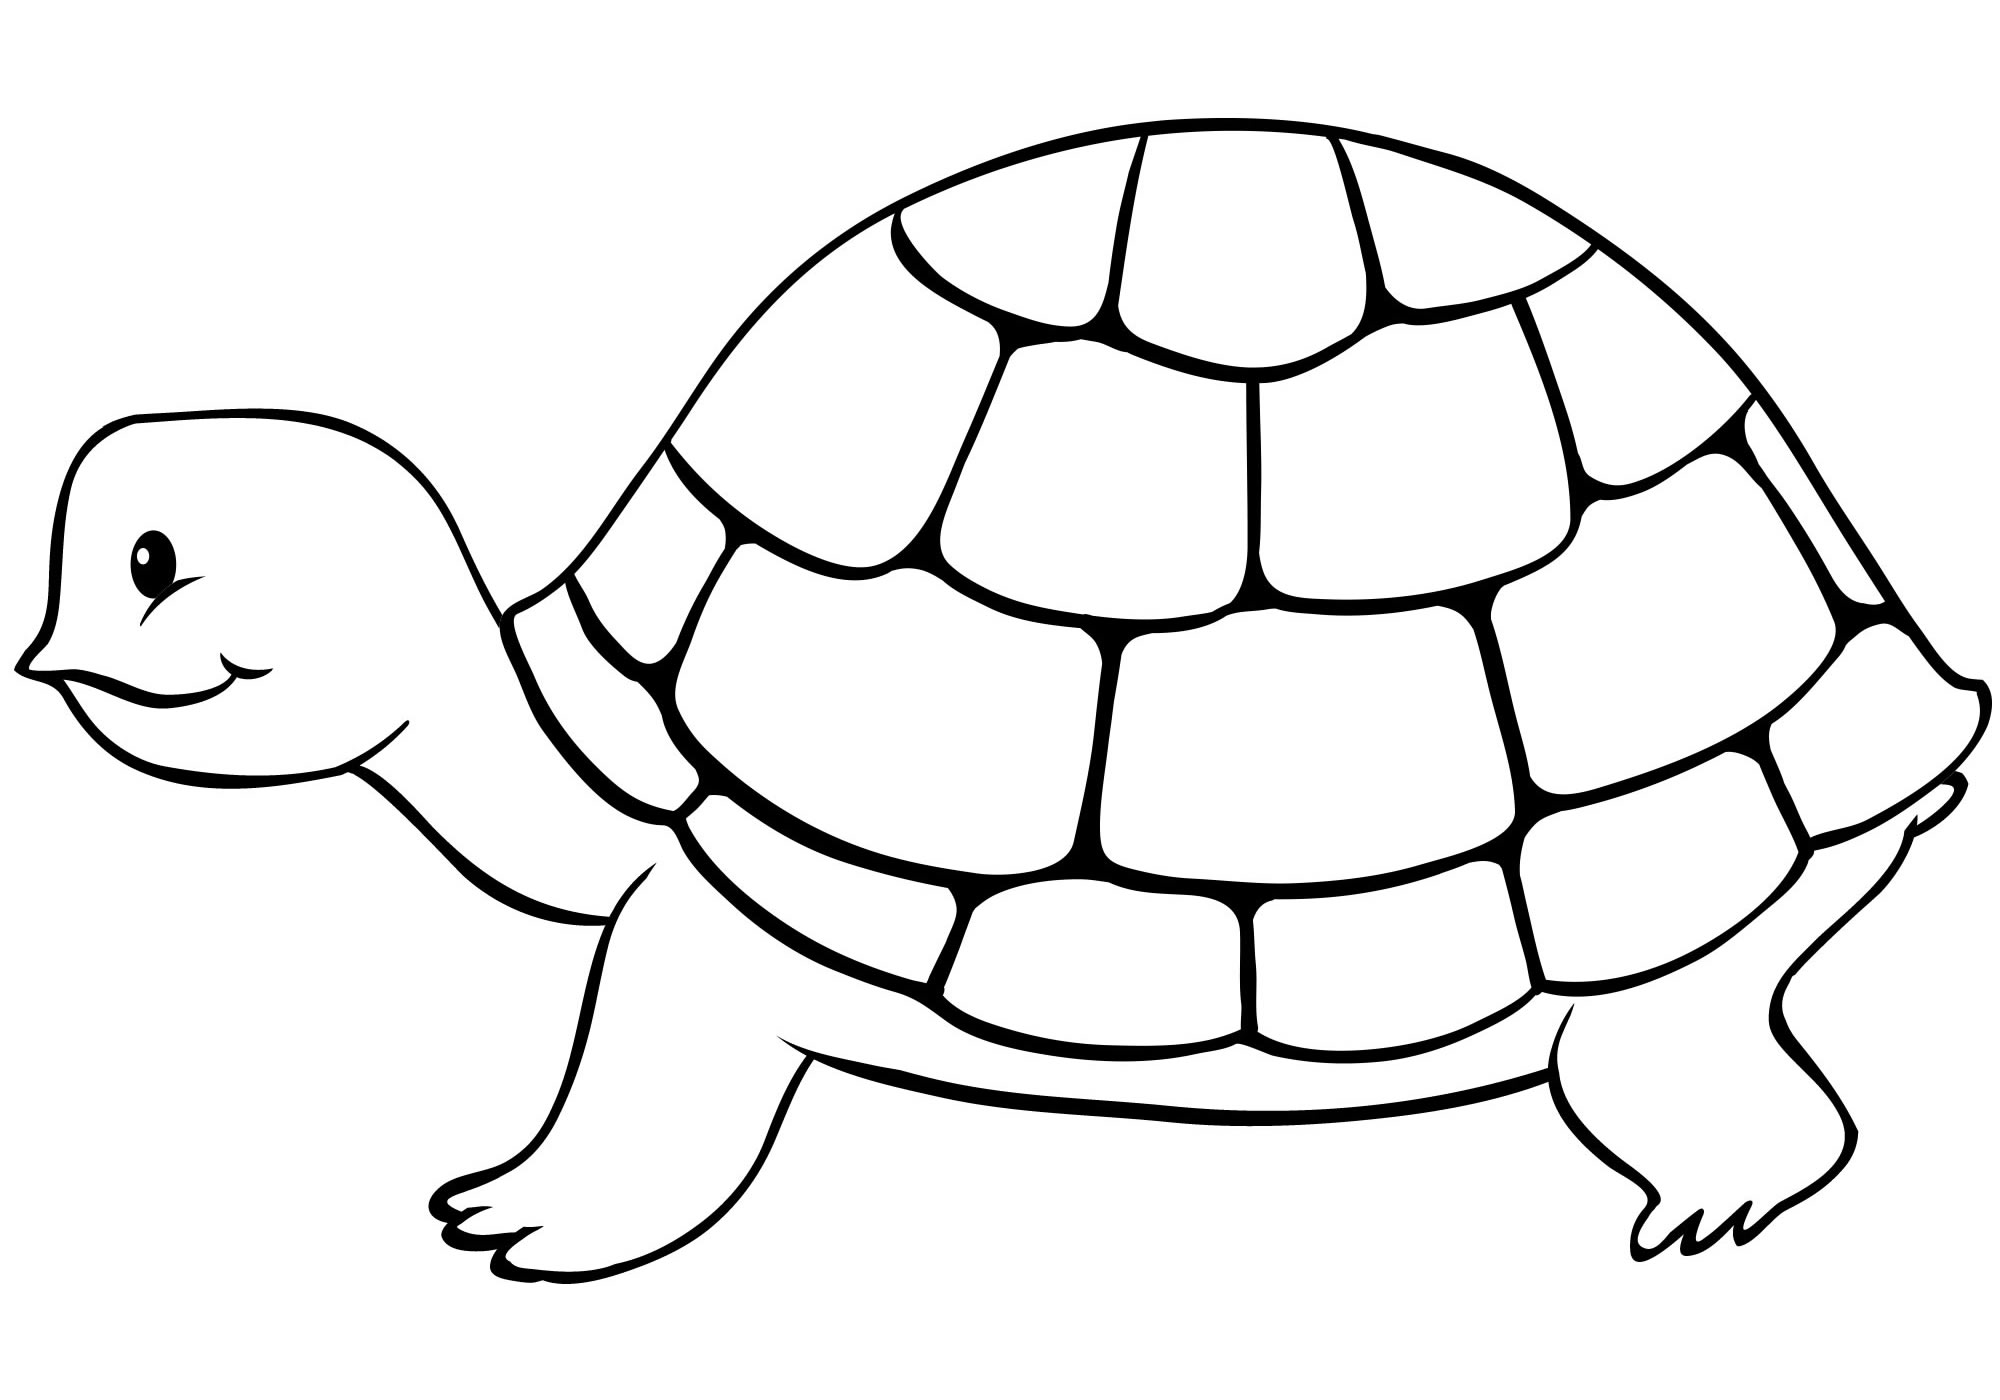 Черепаха с домиком